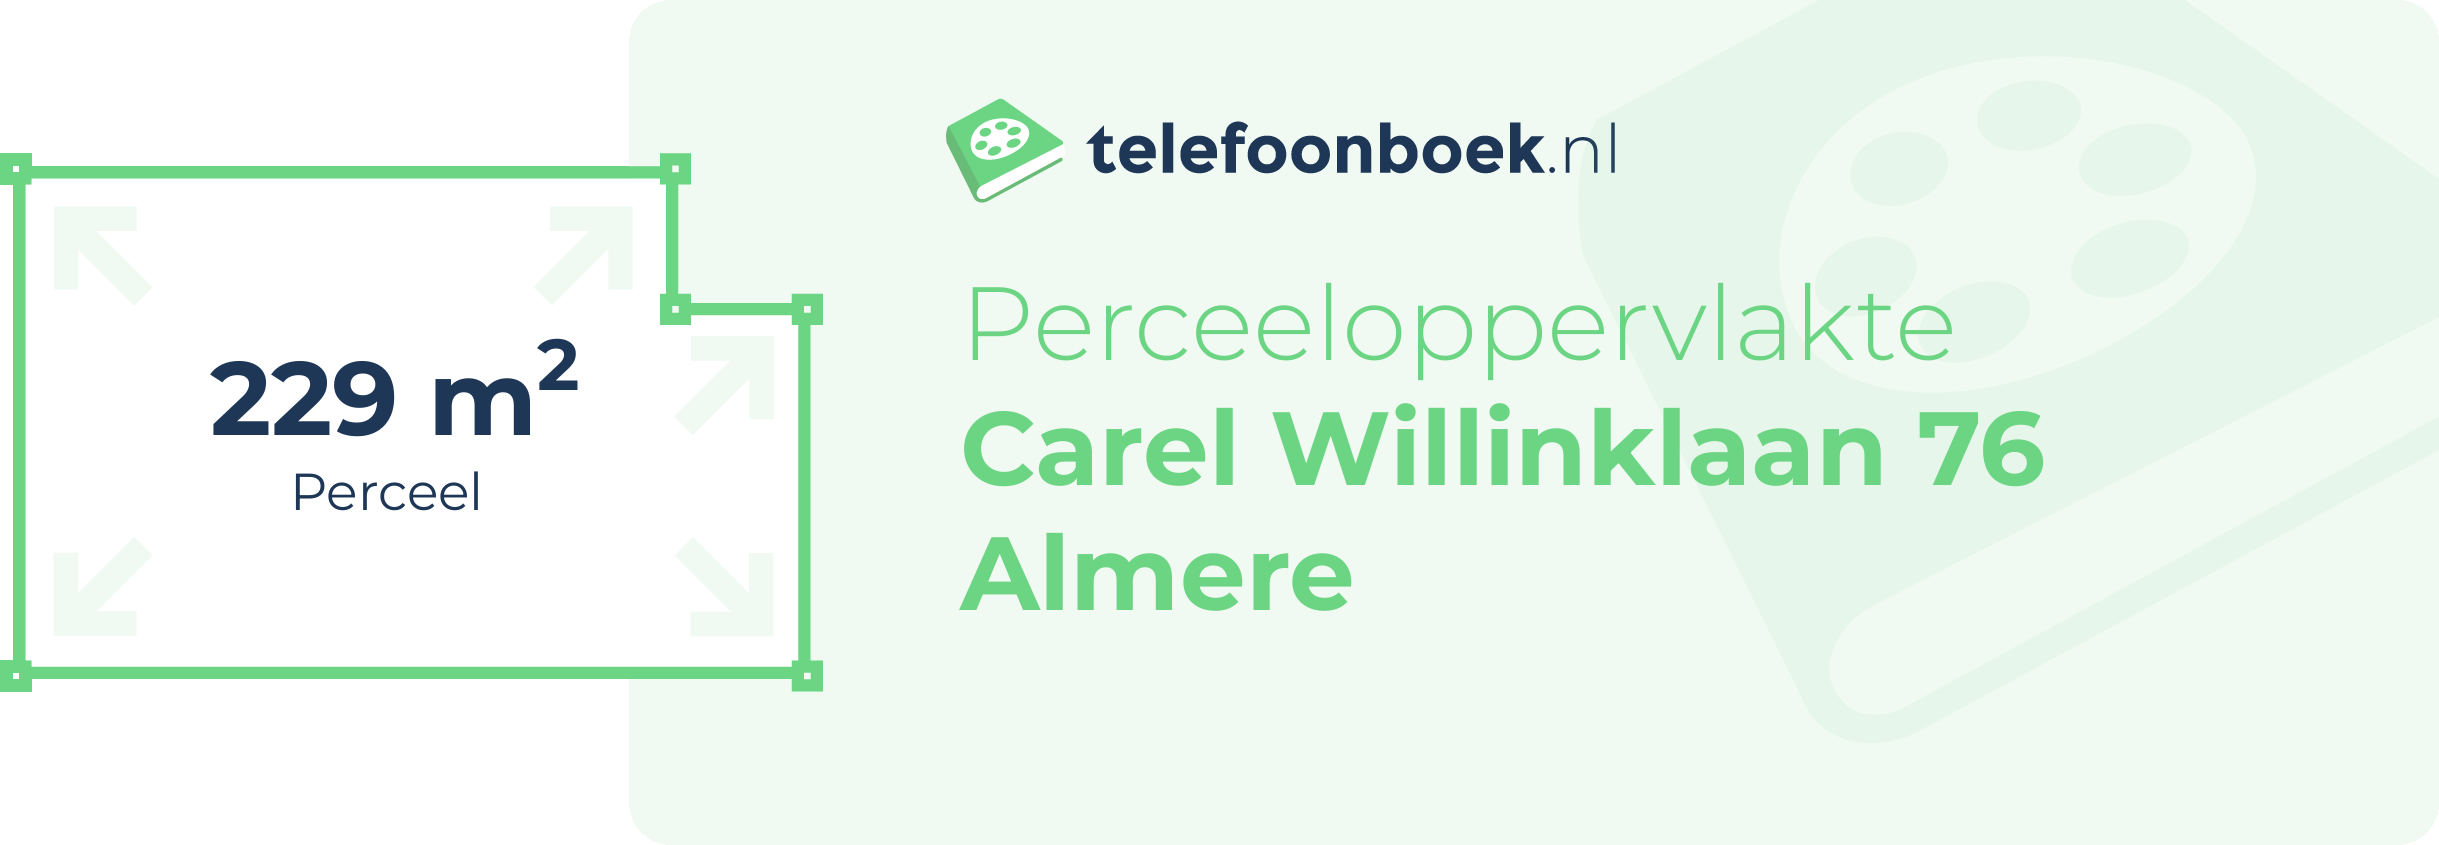 Perceeloppervlakte Carel Willinklaan 76 Almere